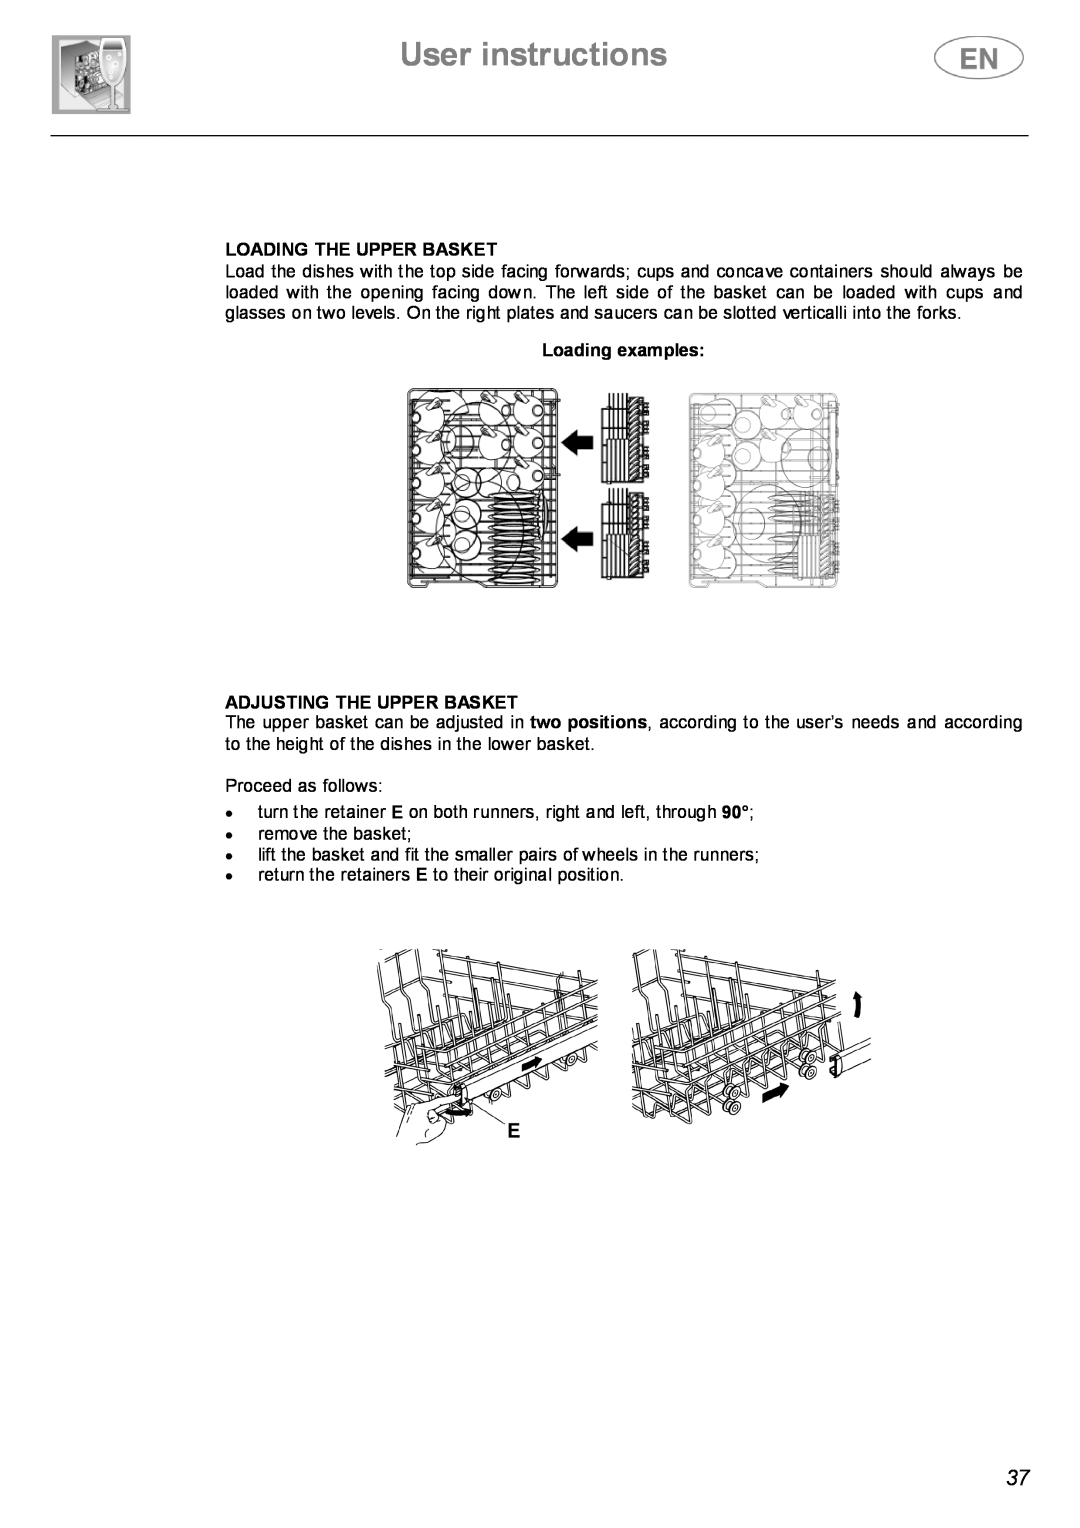 Smeg STX4-3 instruction manual User instructions, Loading The Upper Basket, Loading examples ADJUSTING THE UPPER BASKET 